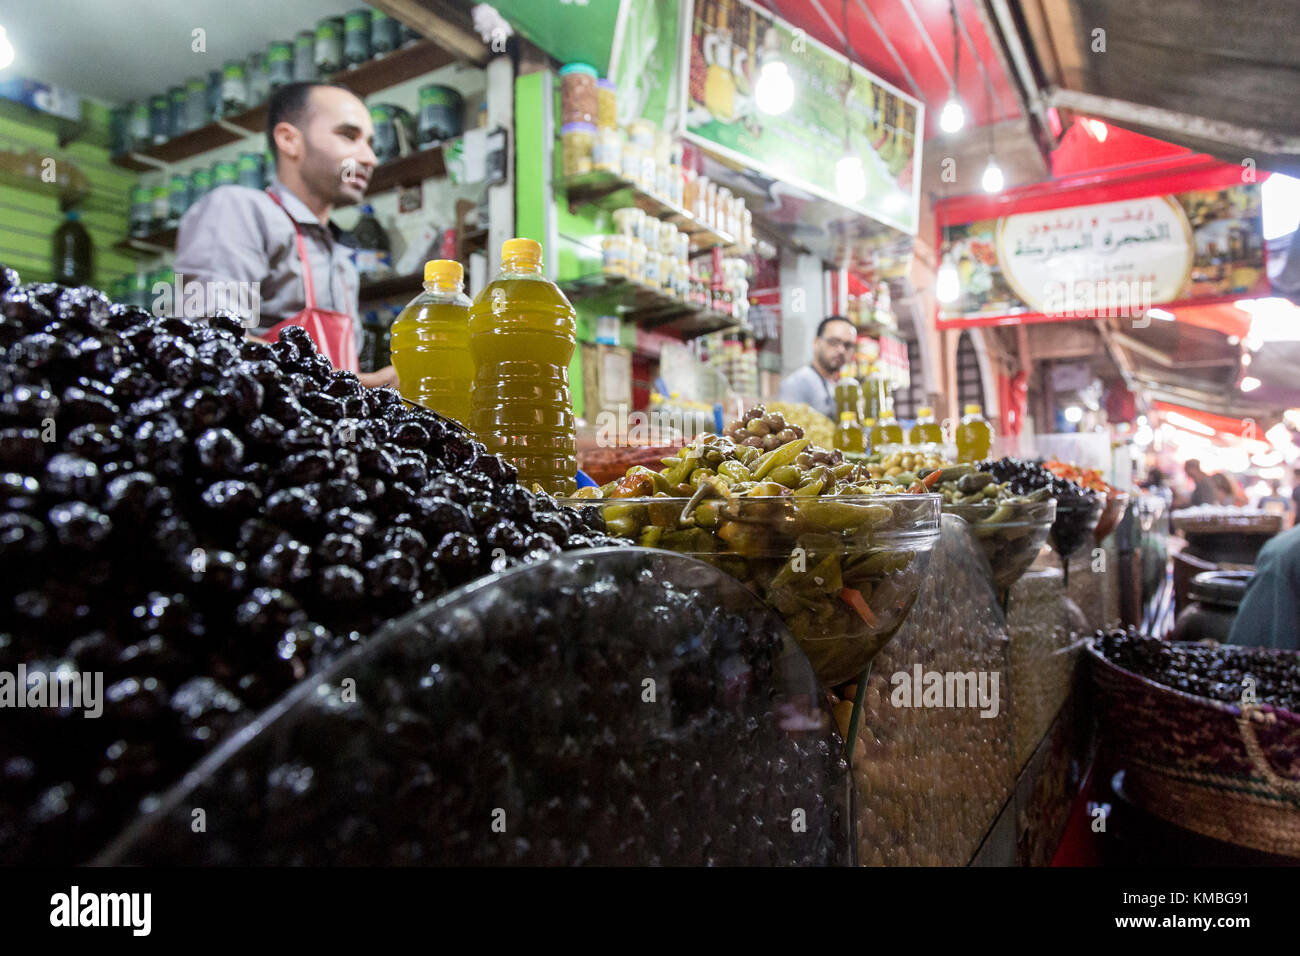 Agadir, Maroc, 24 octobre 2017 : vente d'olives fraîches sur souk El Had, dans le centre d'agadir. l'offre du marché des fruits, légumes, et t Banque D'Images